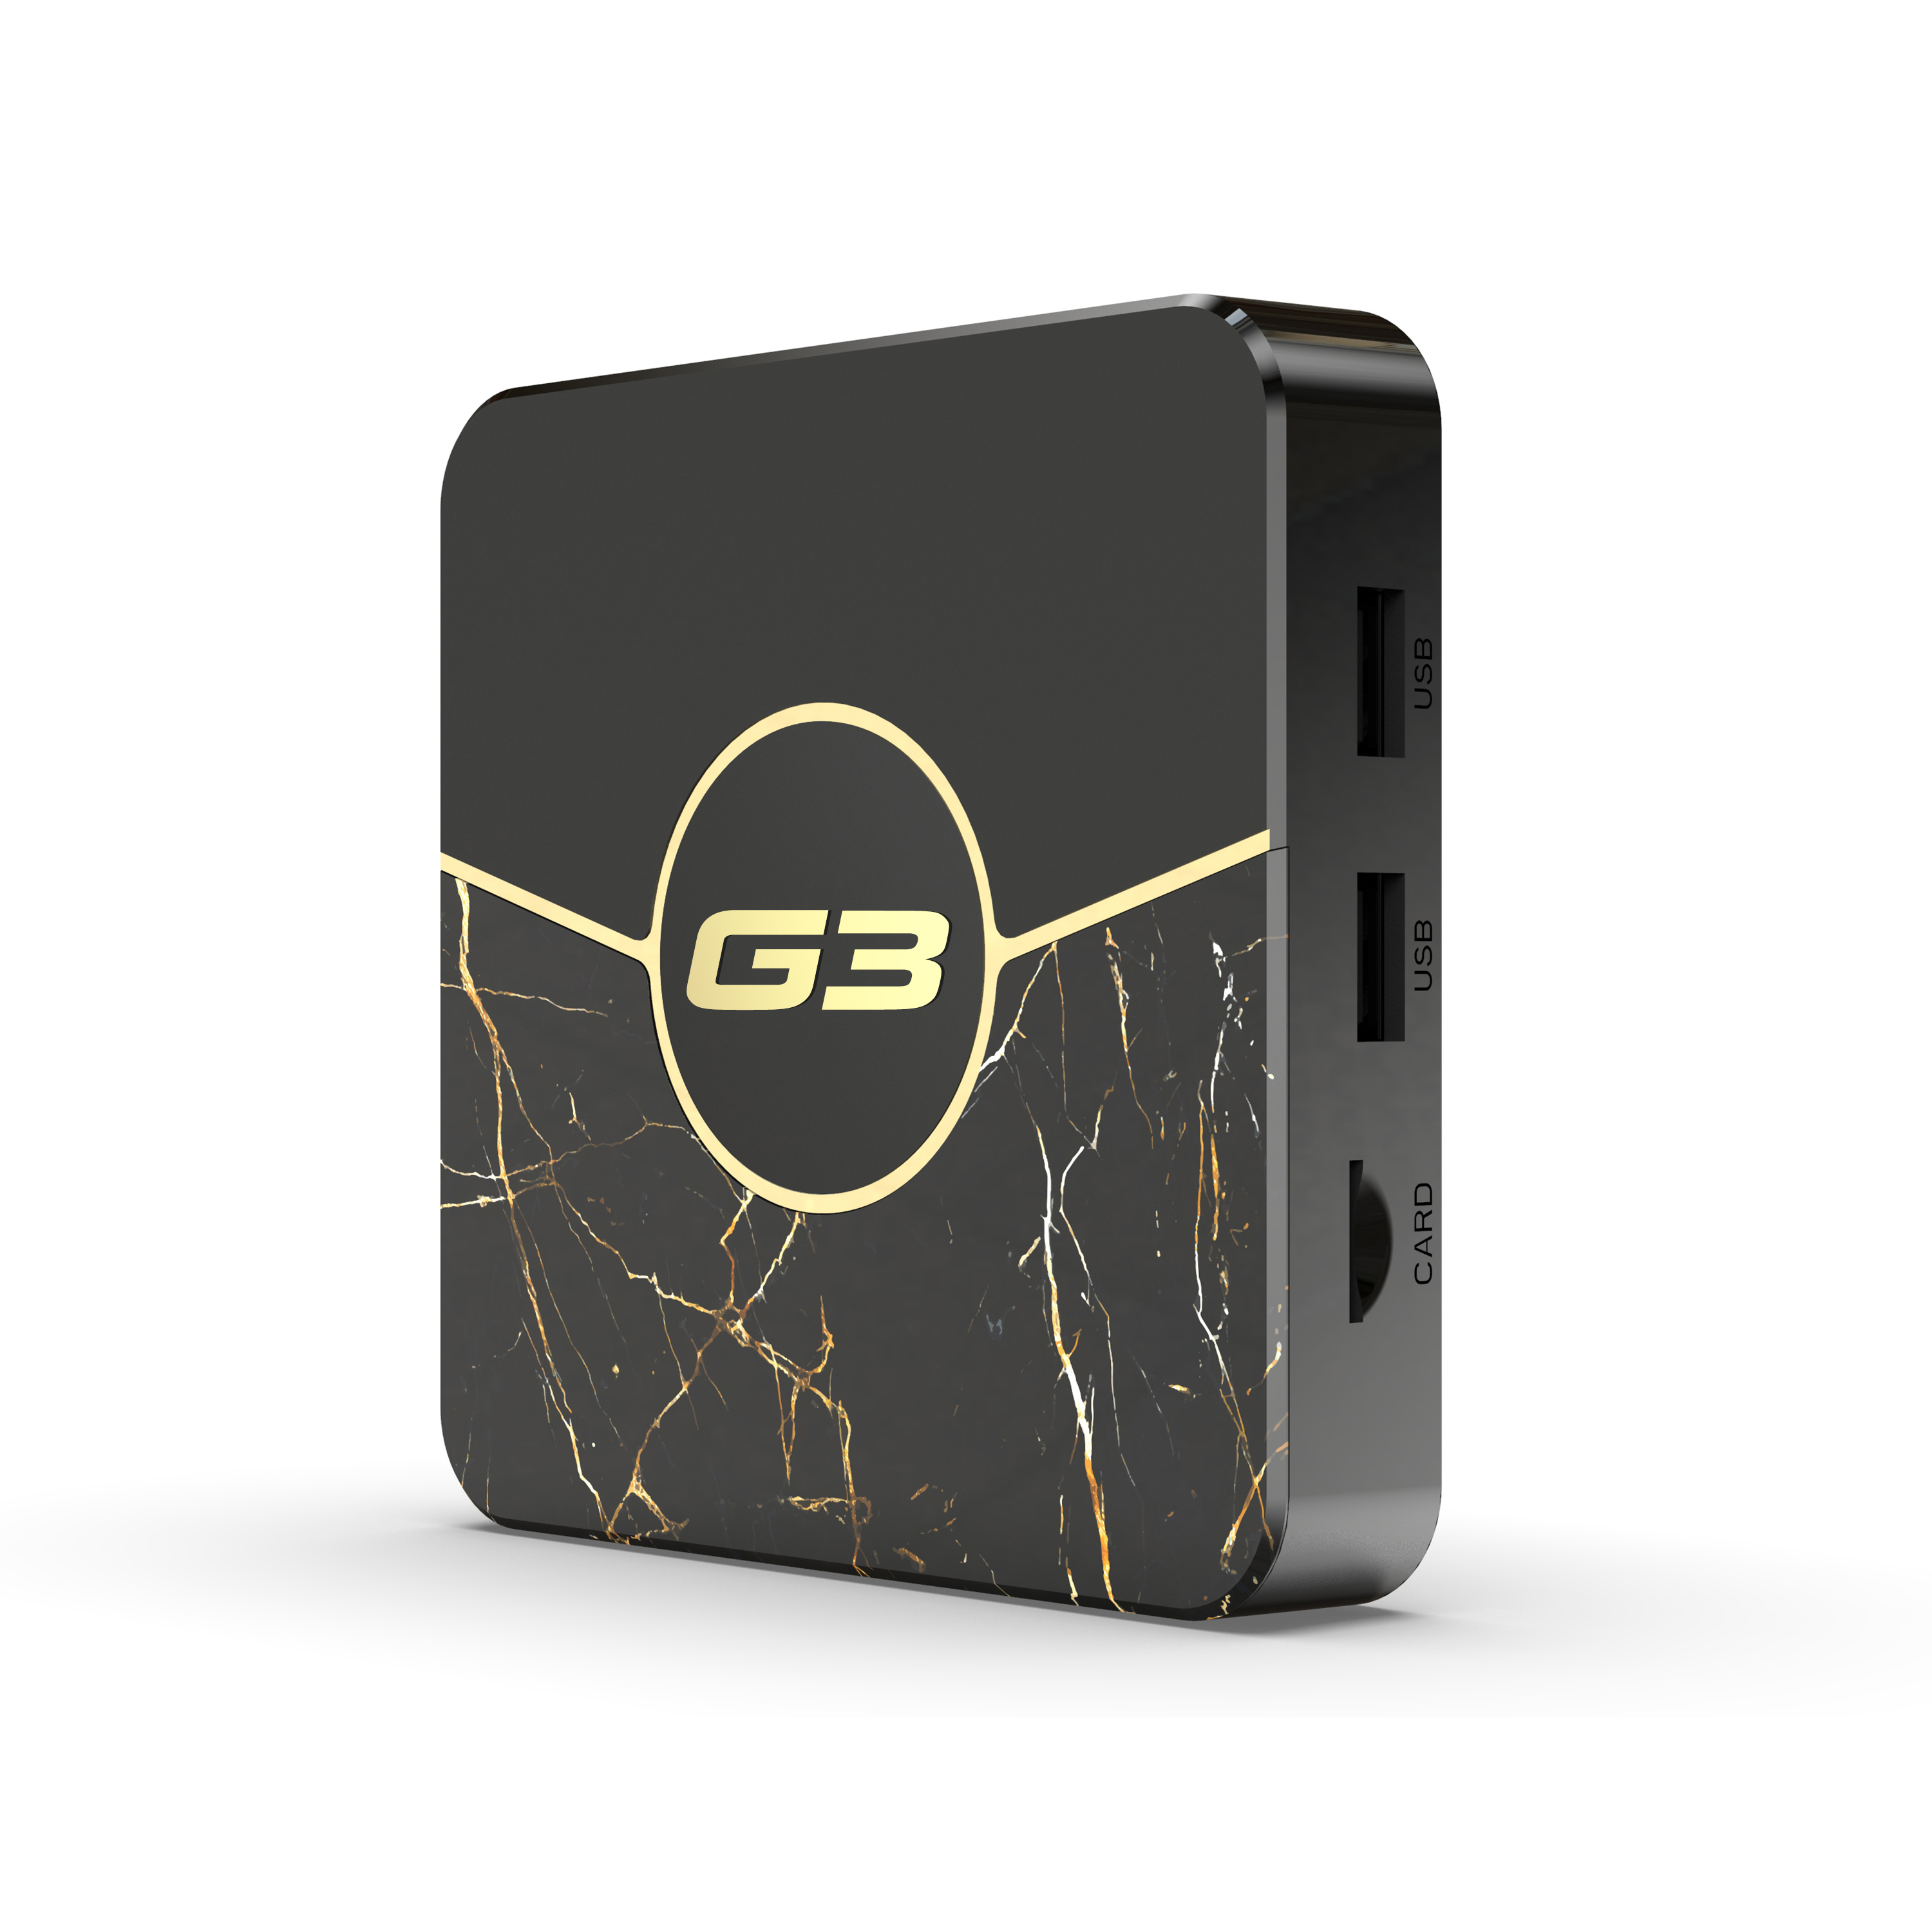 Thiết kế Android TV Box Magicsee G3